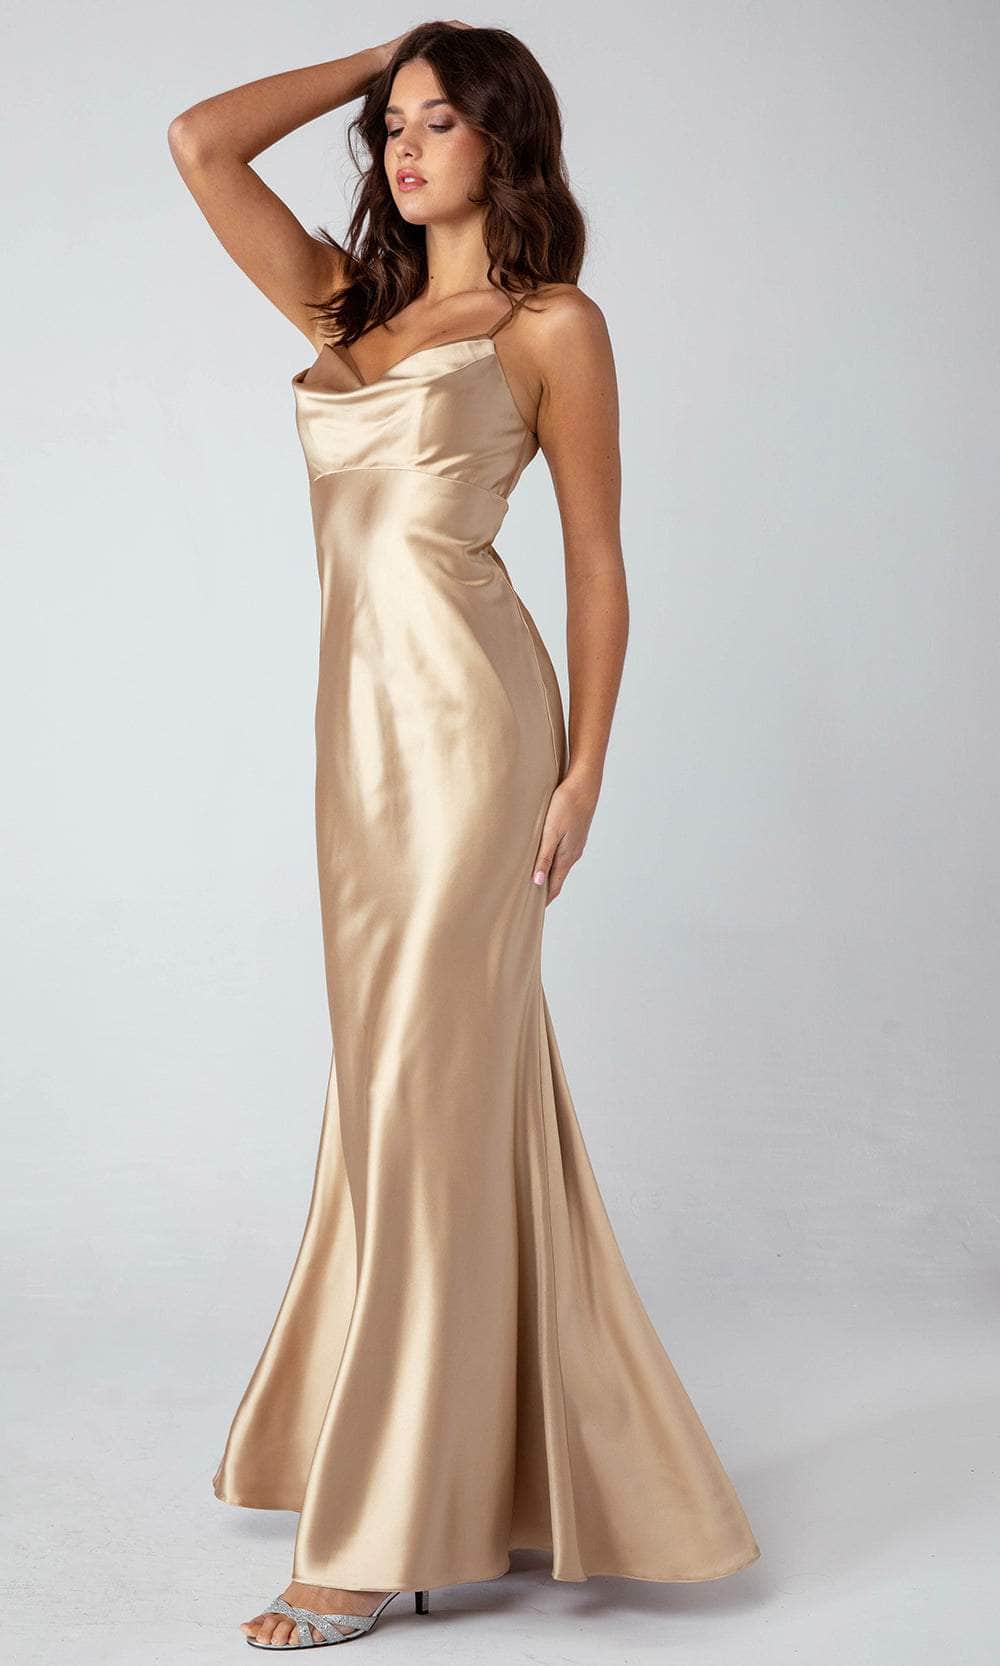 Eureka Fashion 9711 - Cowl Neck Empire Evening Dress Evening  Dresses